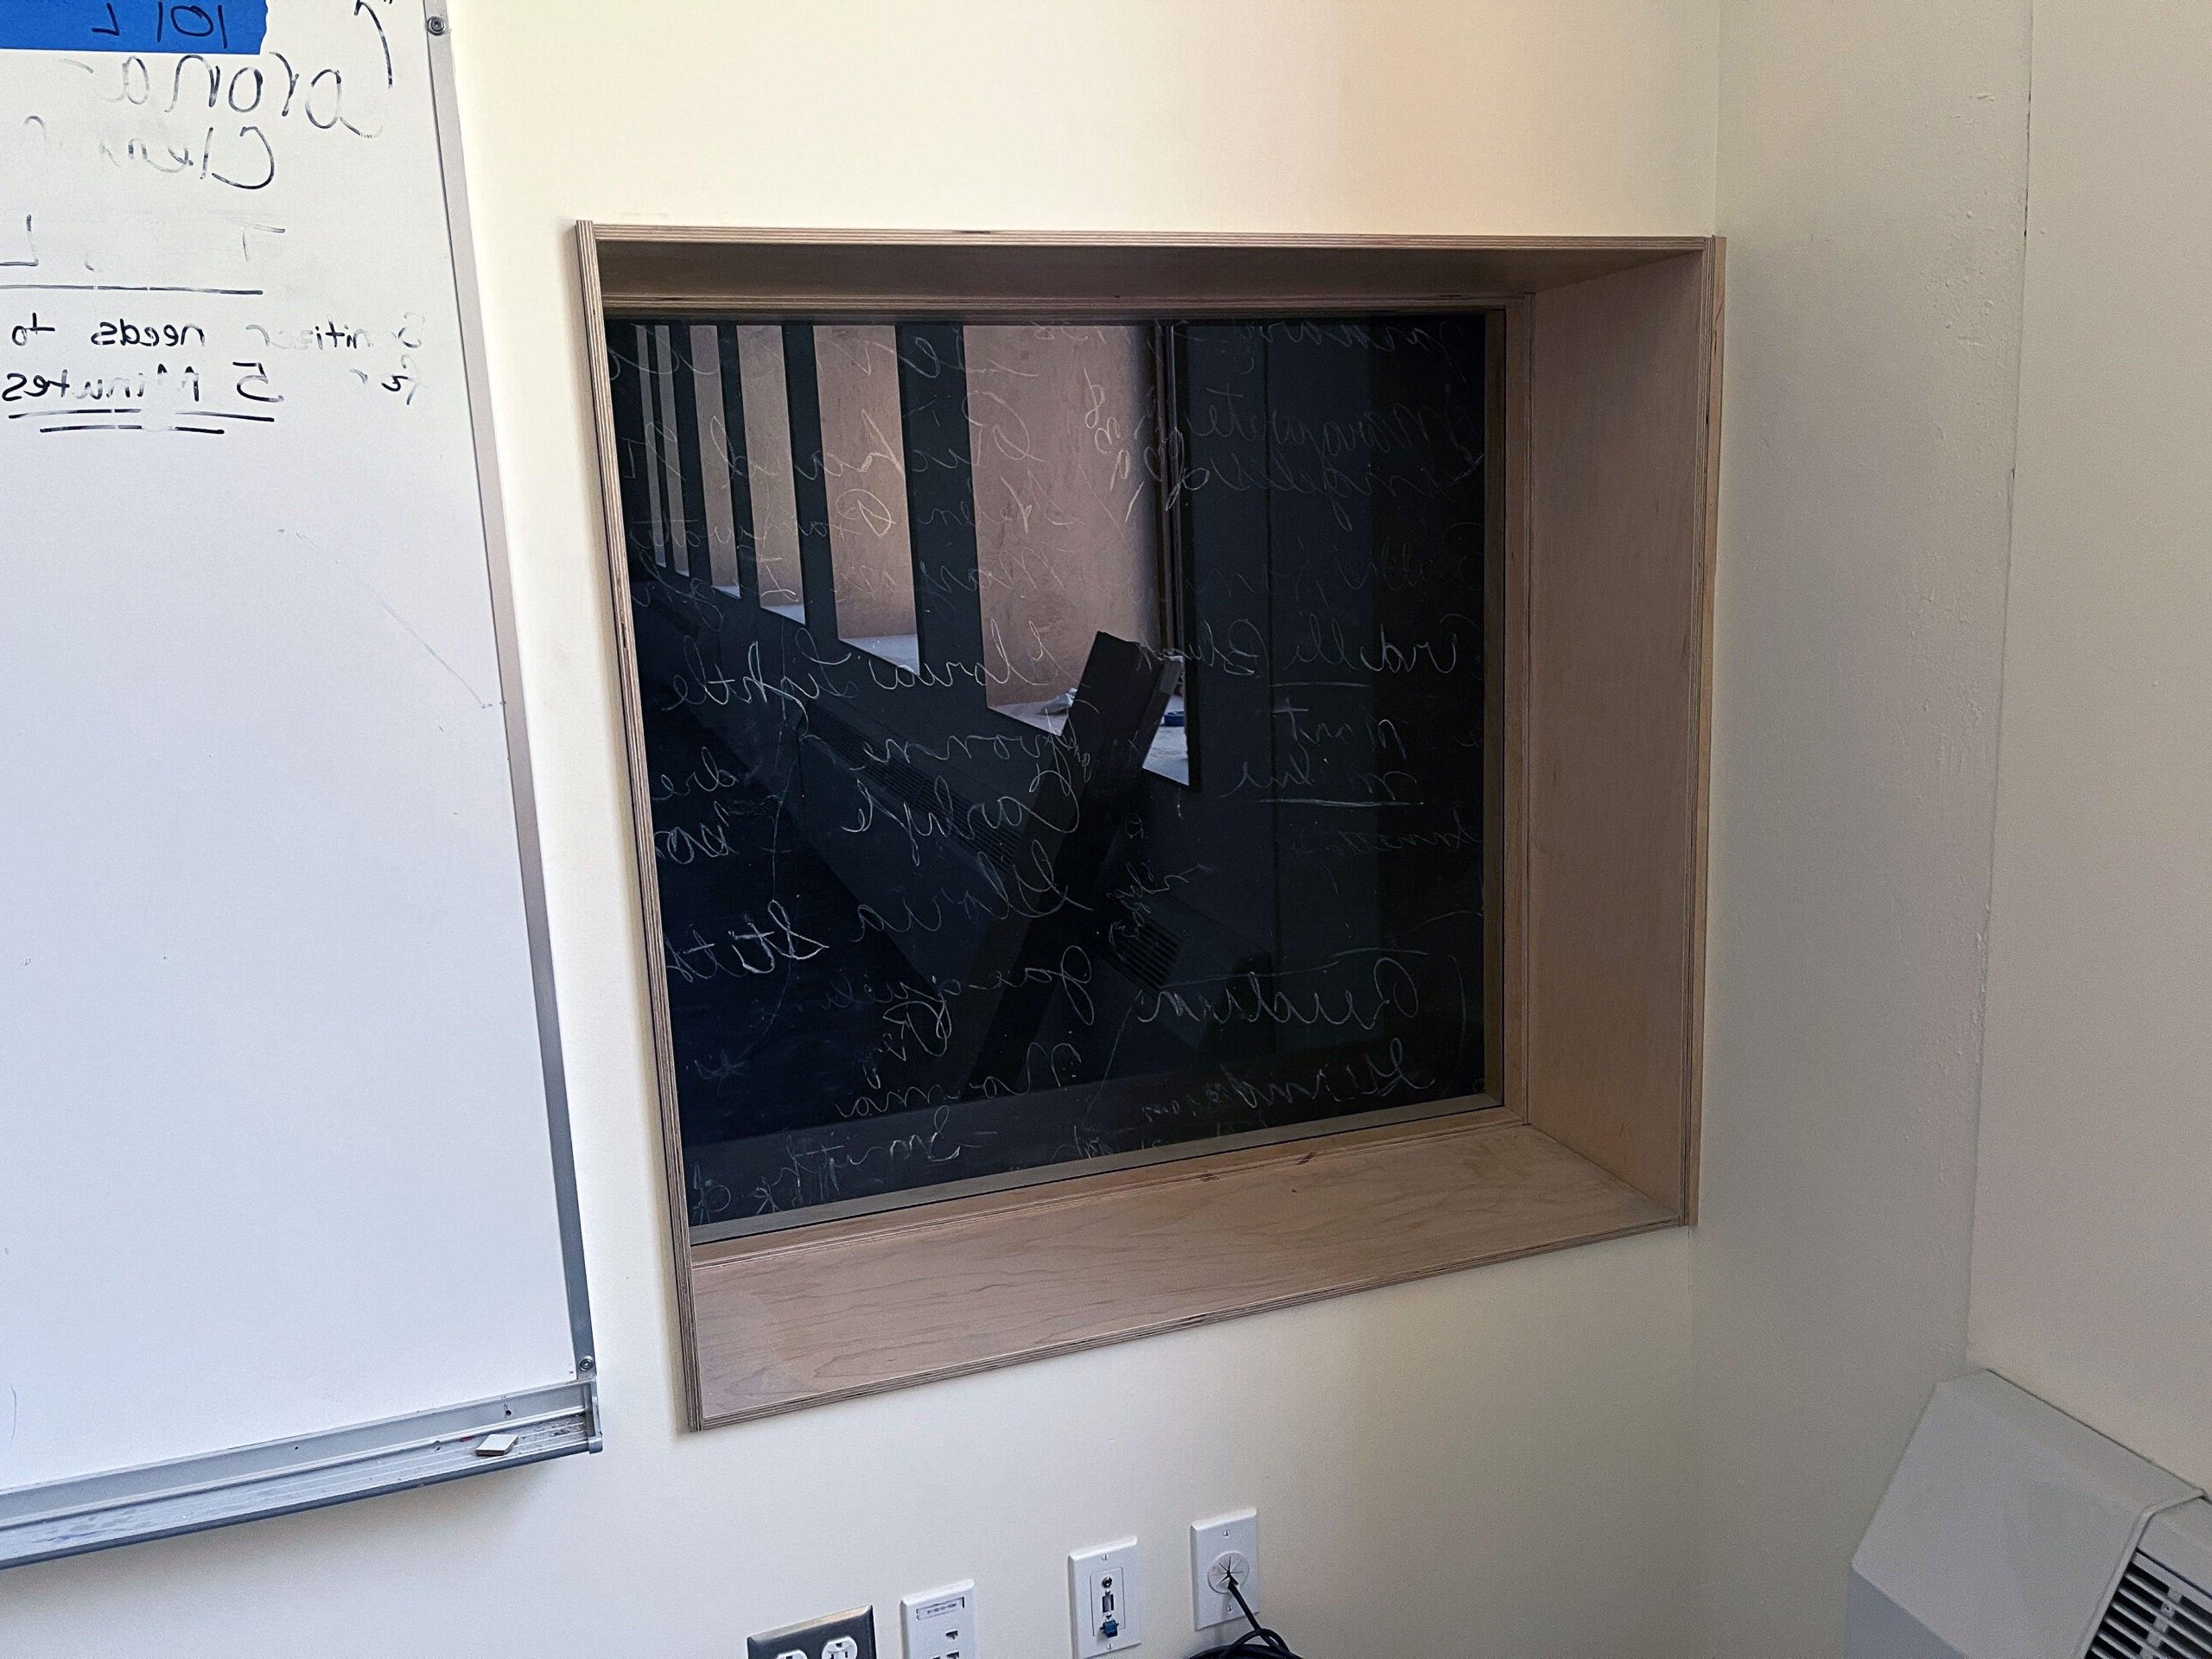 窗户嵌在墙上，有一个黑色的表面，在有机玻璃后面用粉笔写着字